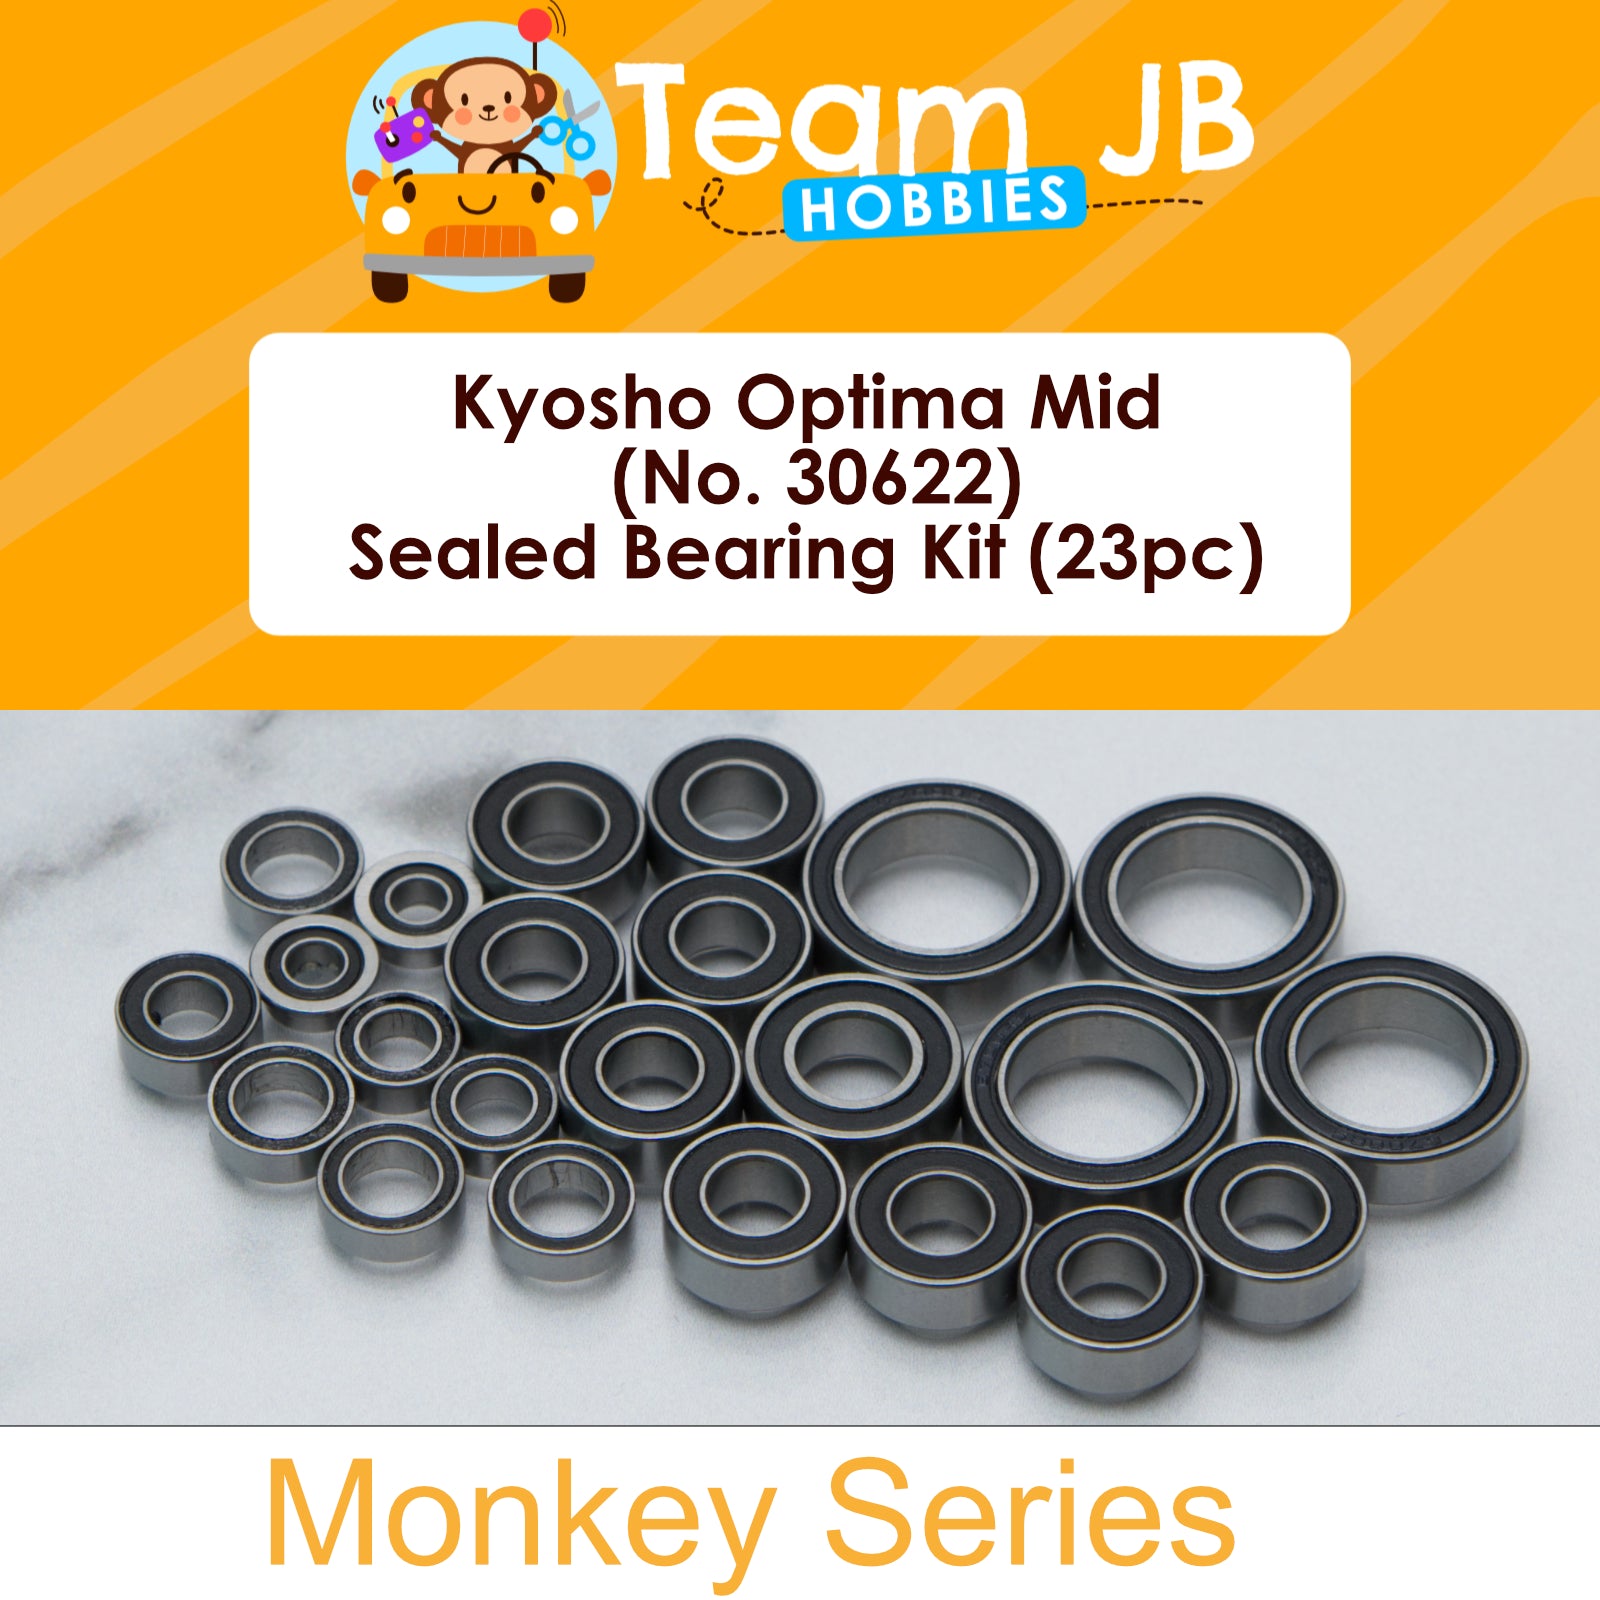 Kyosho Optima Mid (No. 30622) - Sealed Bearing Kit